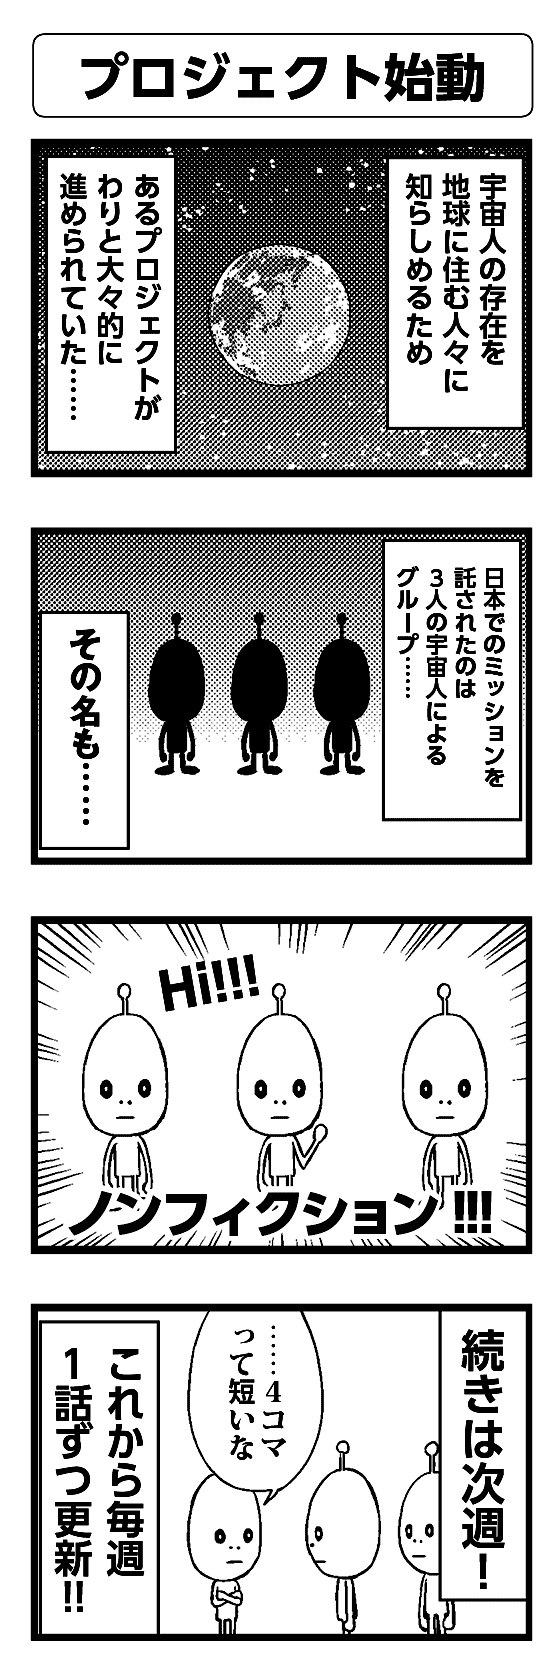 プロジェクト始動 - 四コマ漫画ノンフィクション #001